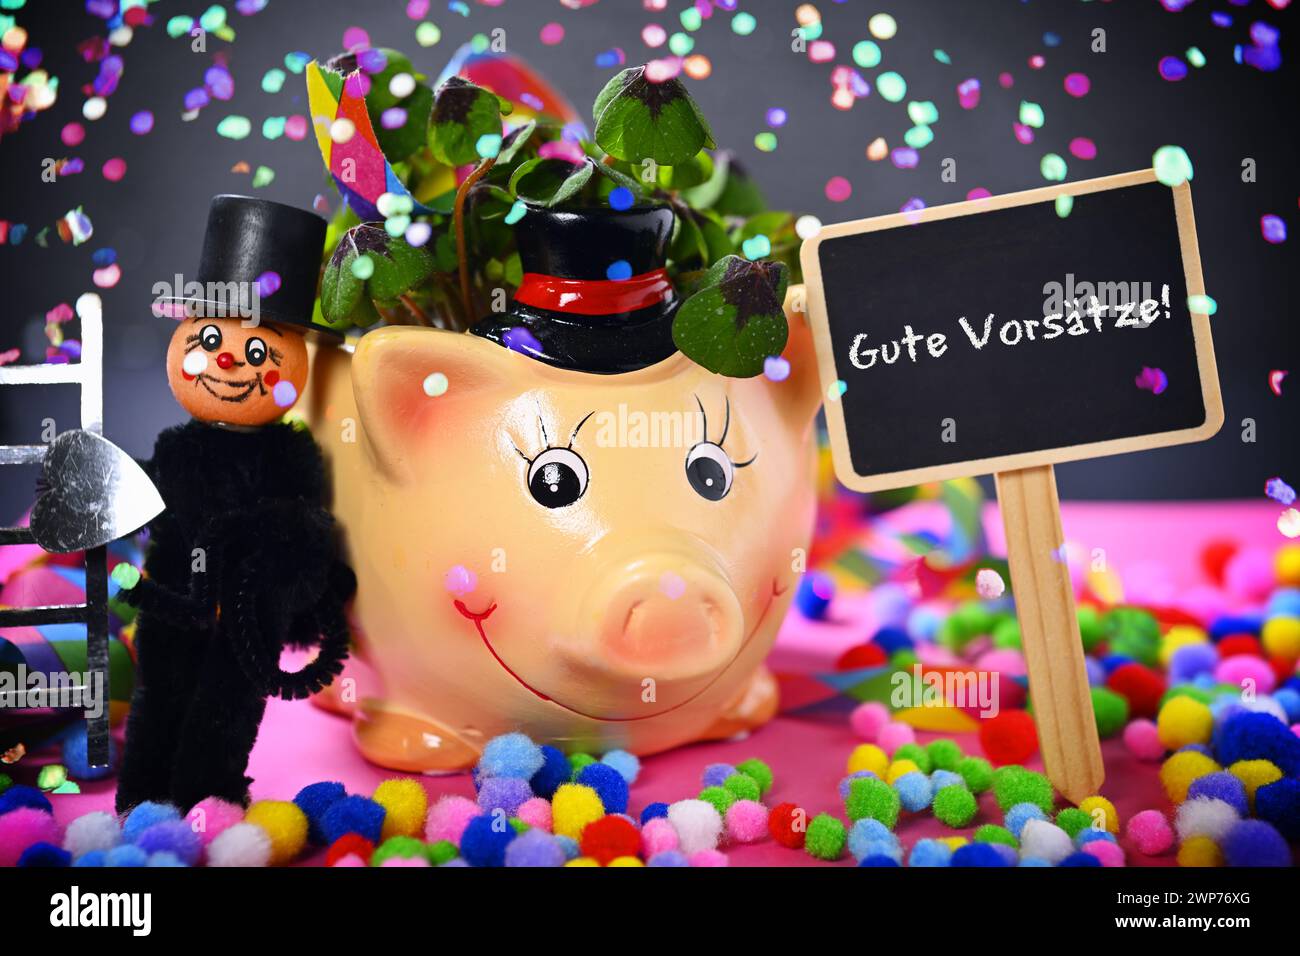 FOTOMONTAGE, Glücksschwein mit Kleeblättern, Schornsteinfegerfigur und Schild mit Aufschrift Gute Vorsätze ! mit Konfetti Banque D'Images